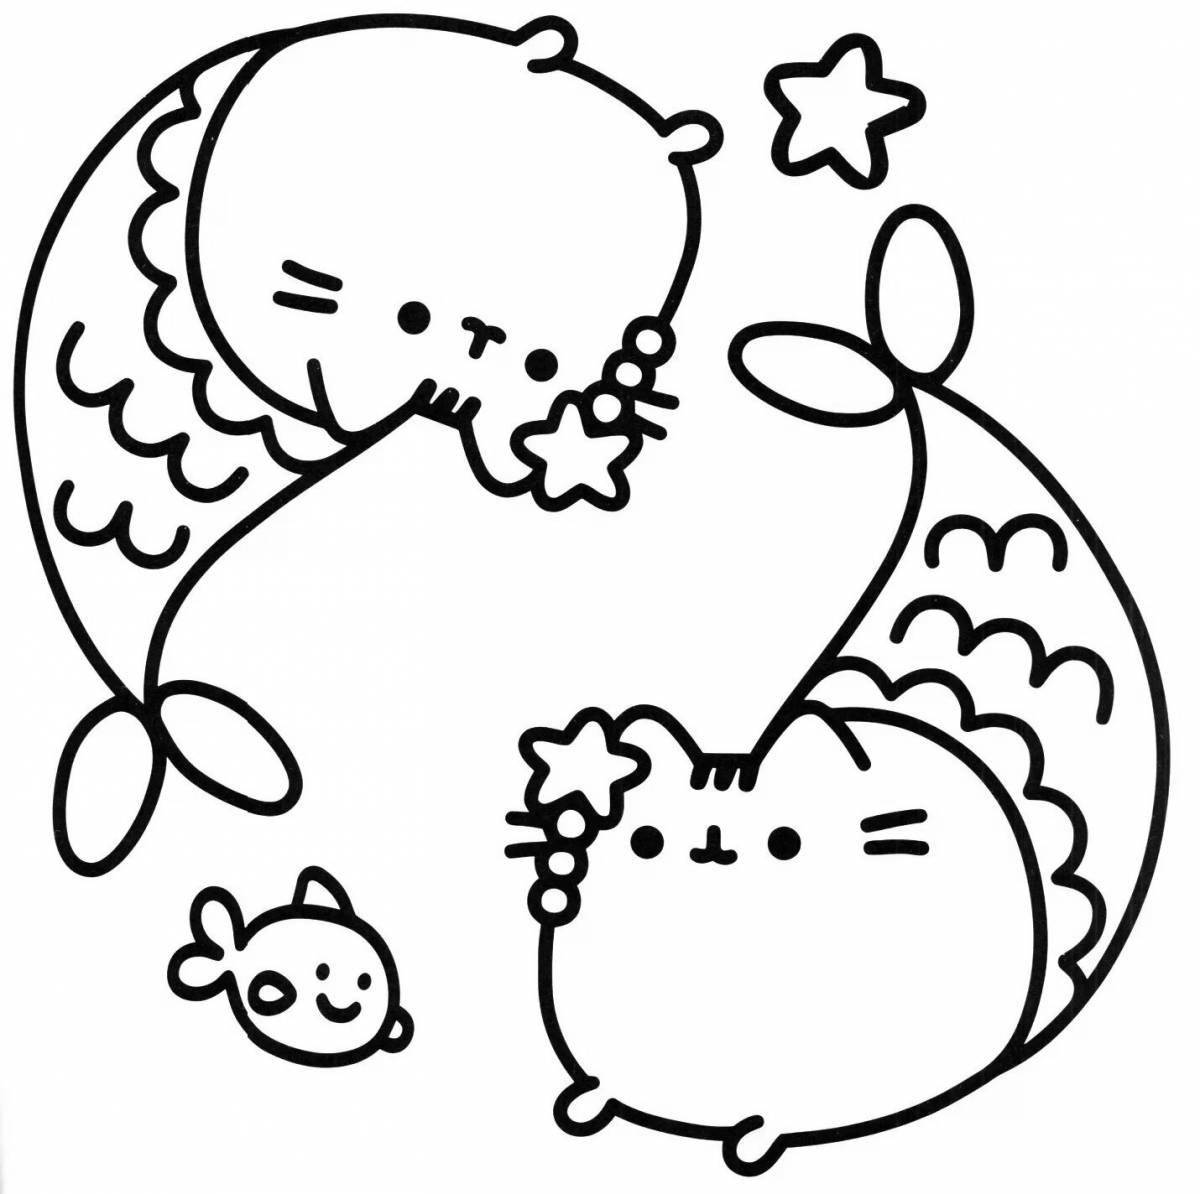 Coloring page winking kawaii cat